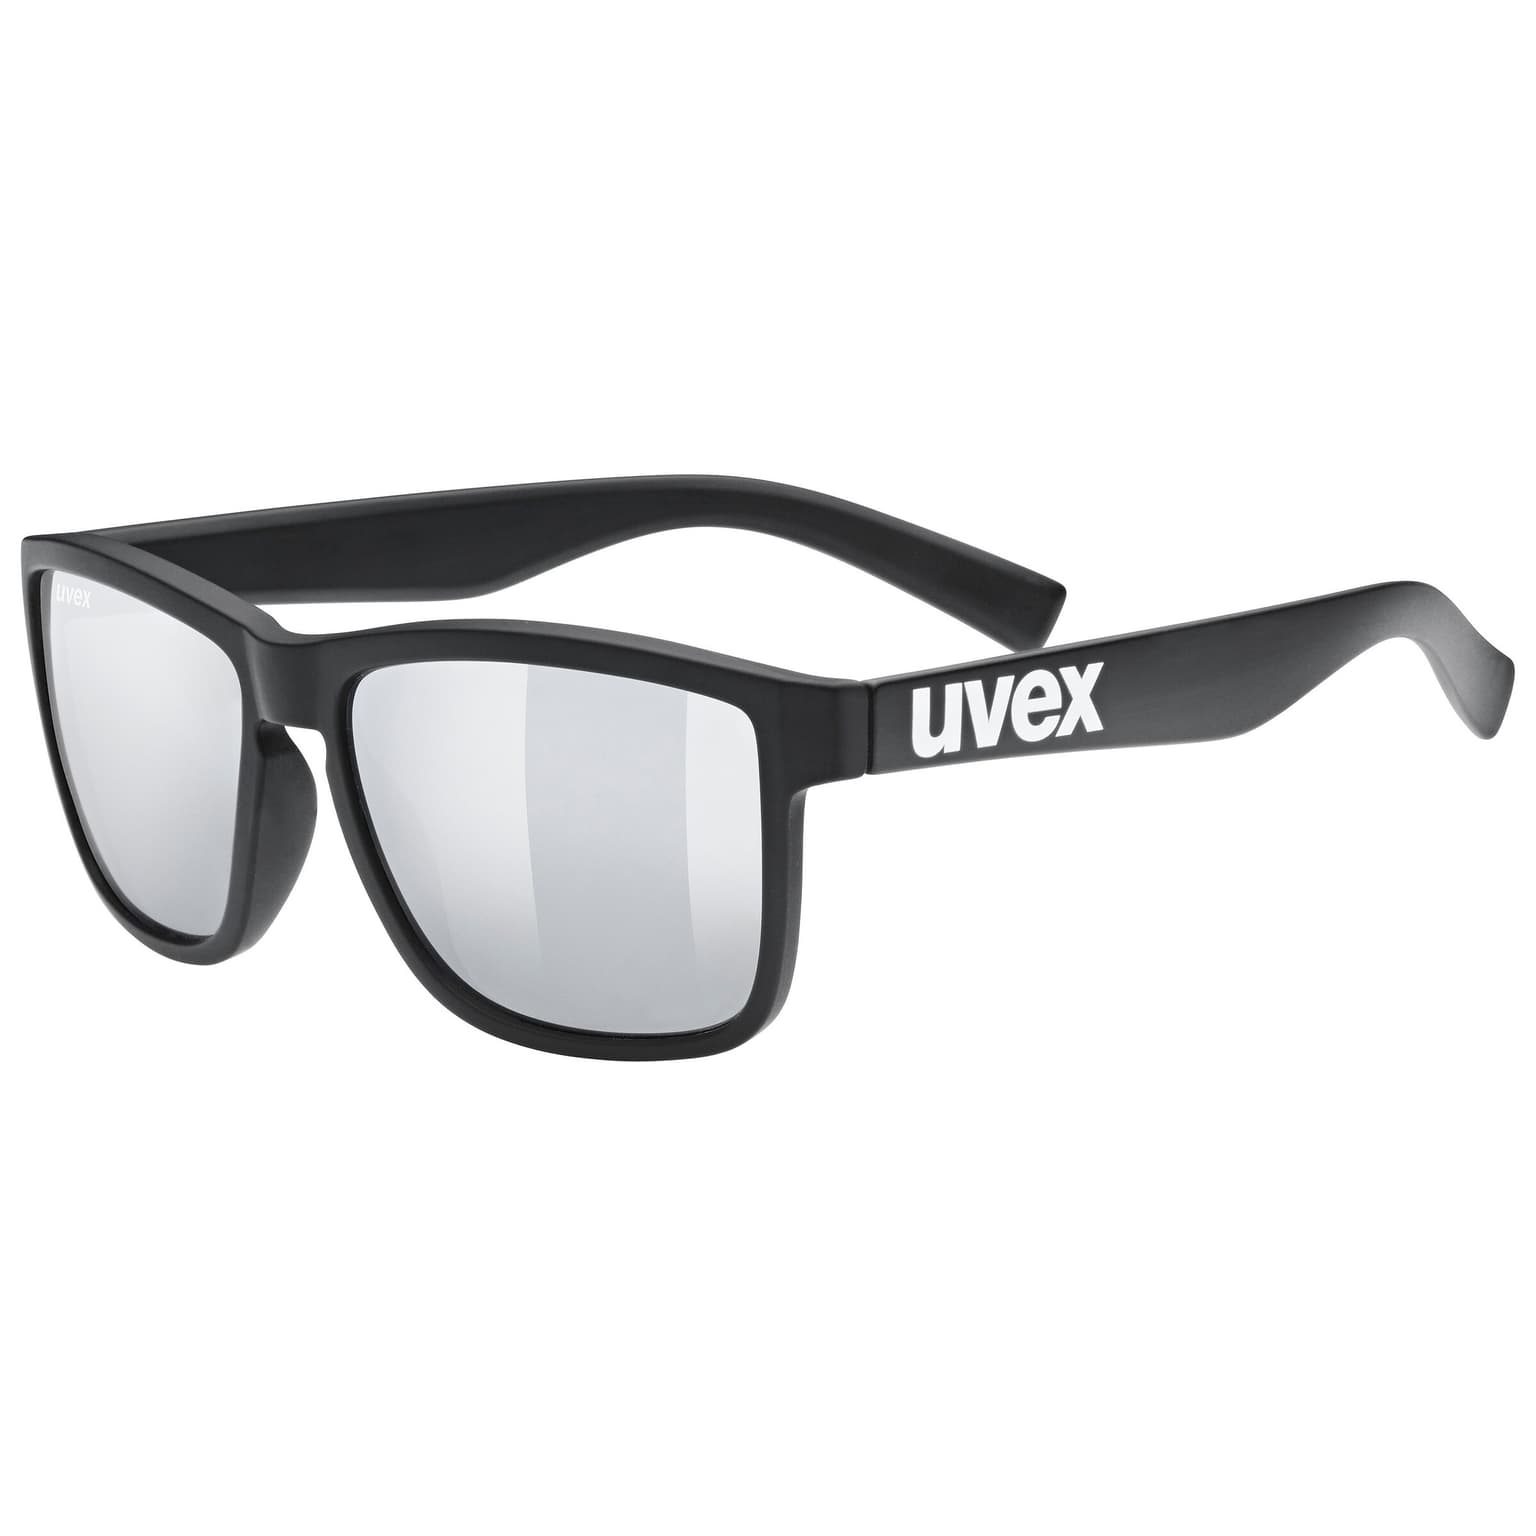 Uvex Uvex Lifestyle lgl 39 Sportbrille nero 1